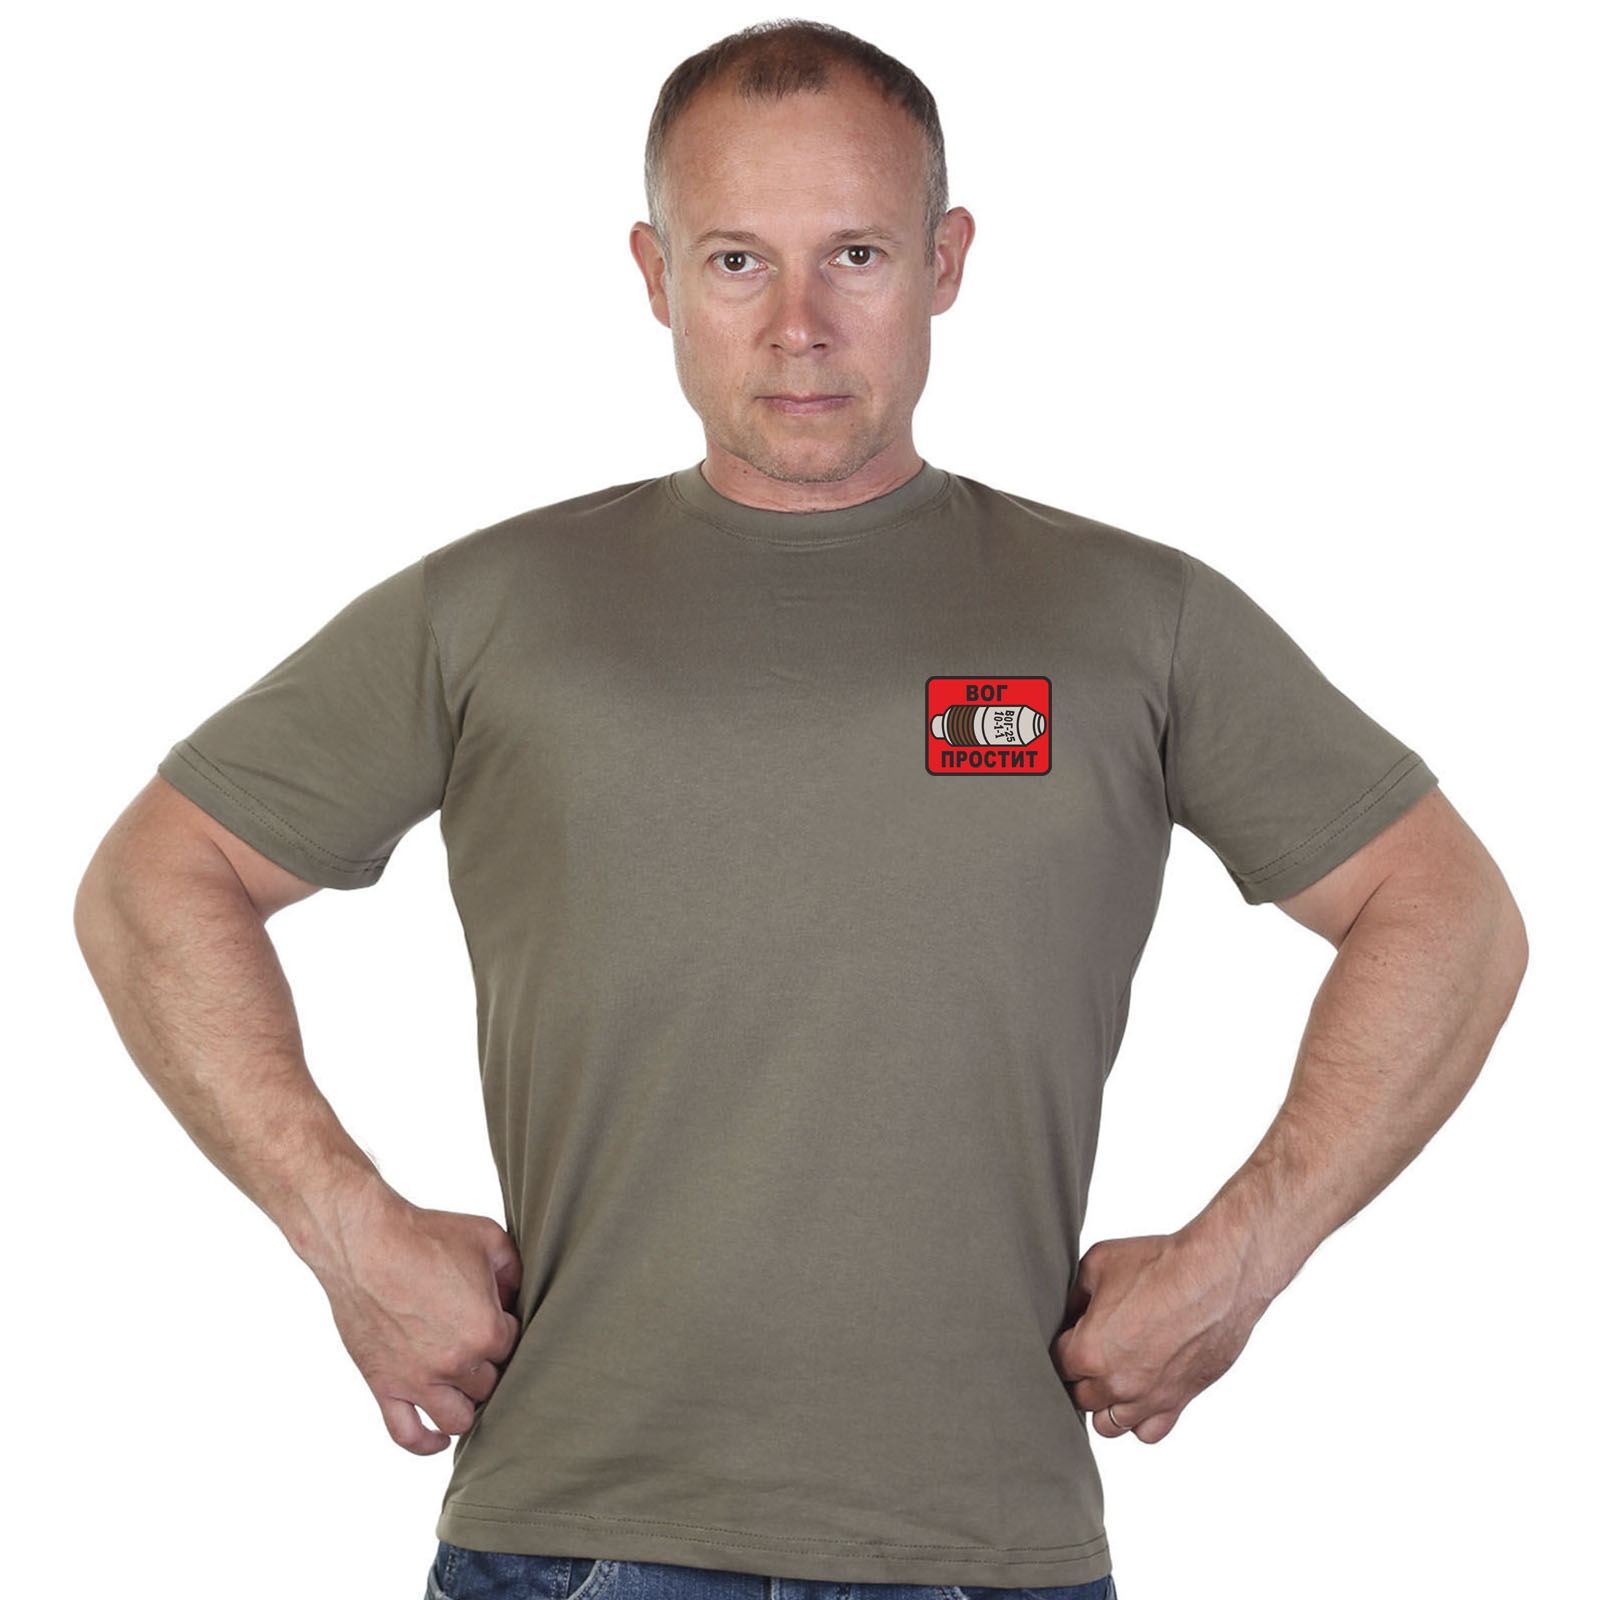 Оливковая футболка с термотрансфером "ВОГ простит"